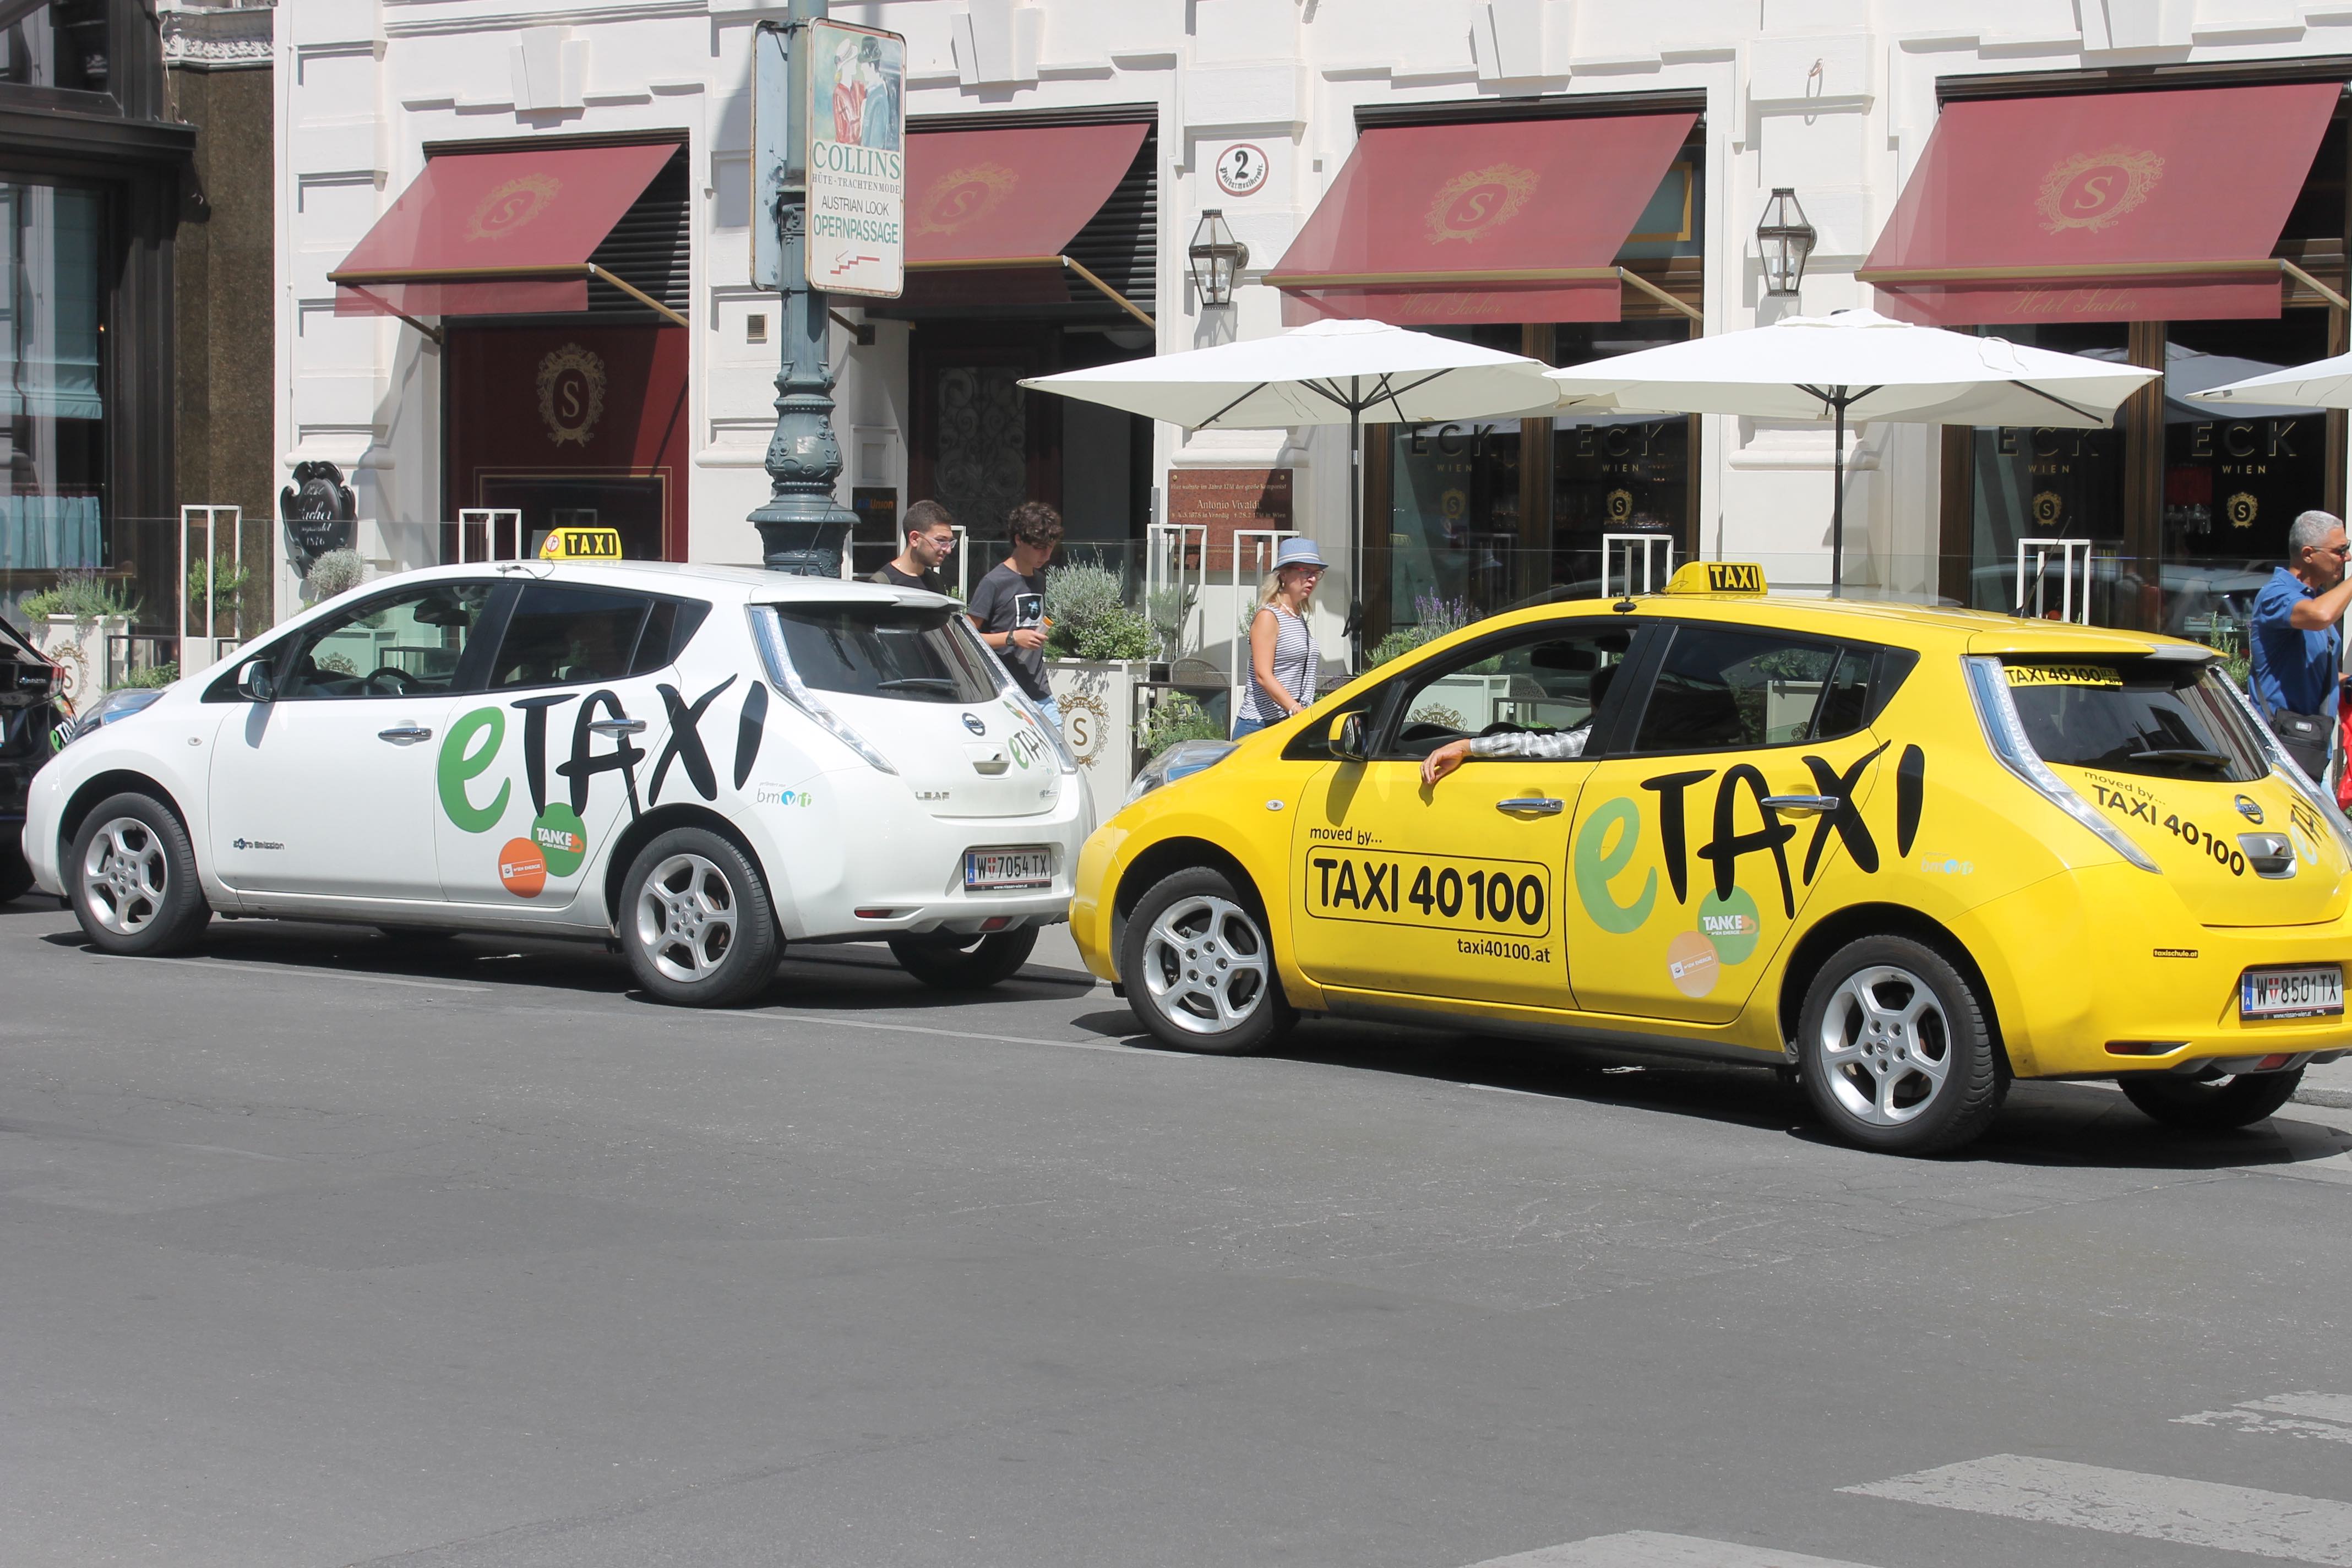 Blog: Viyana'da hareketlilik e-Taksi'den çok daha ileri gidiyor…